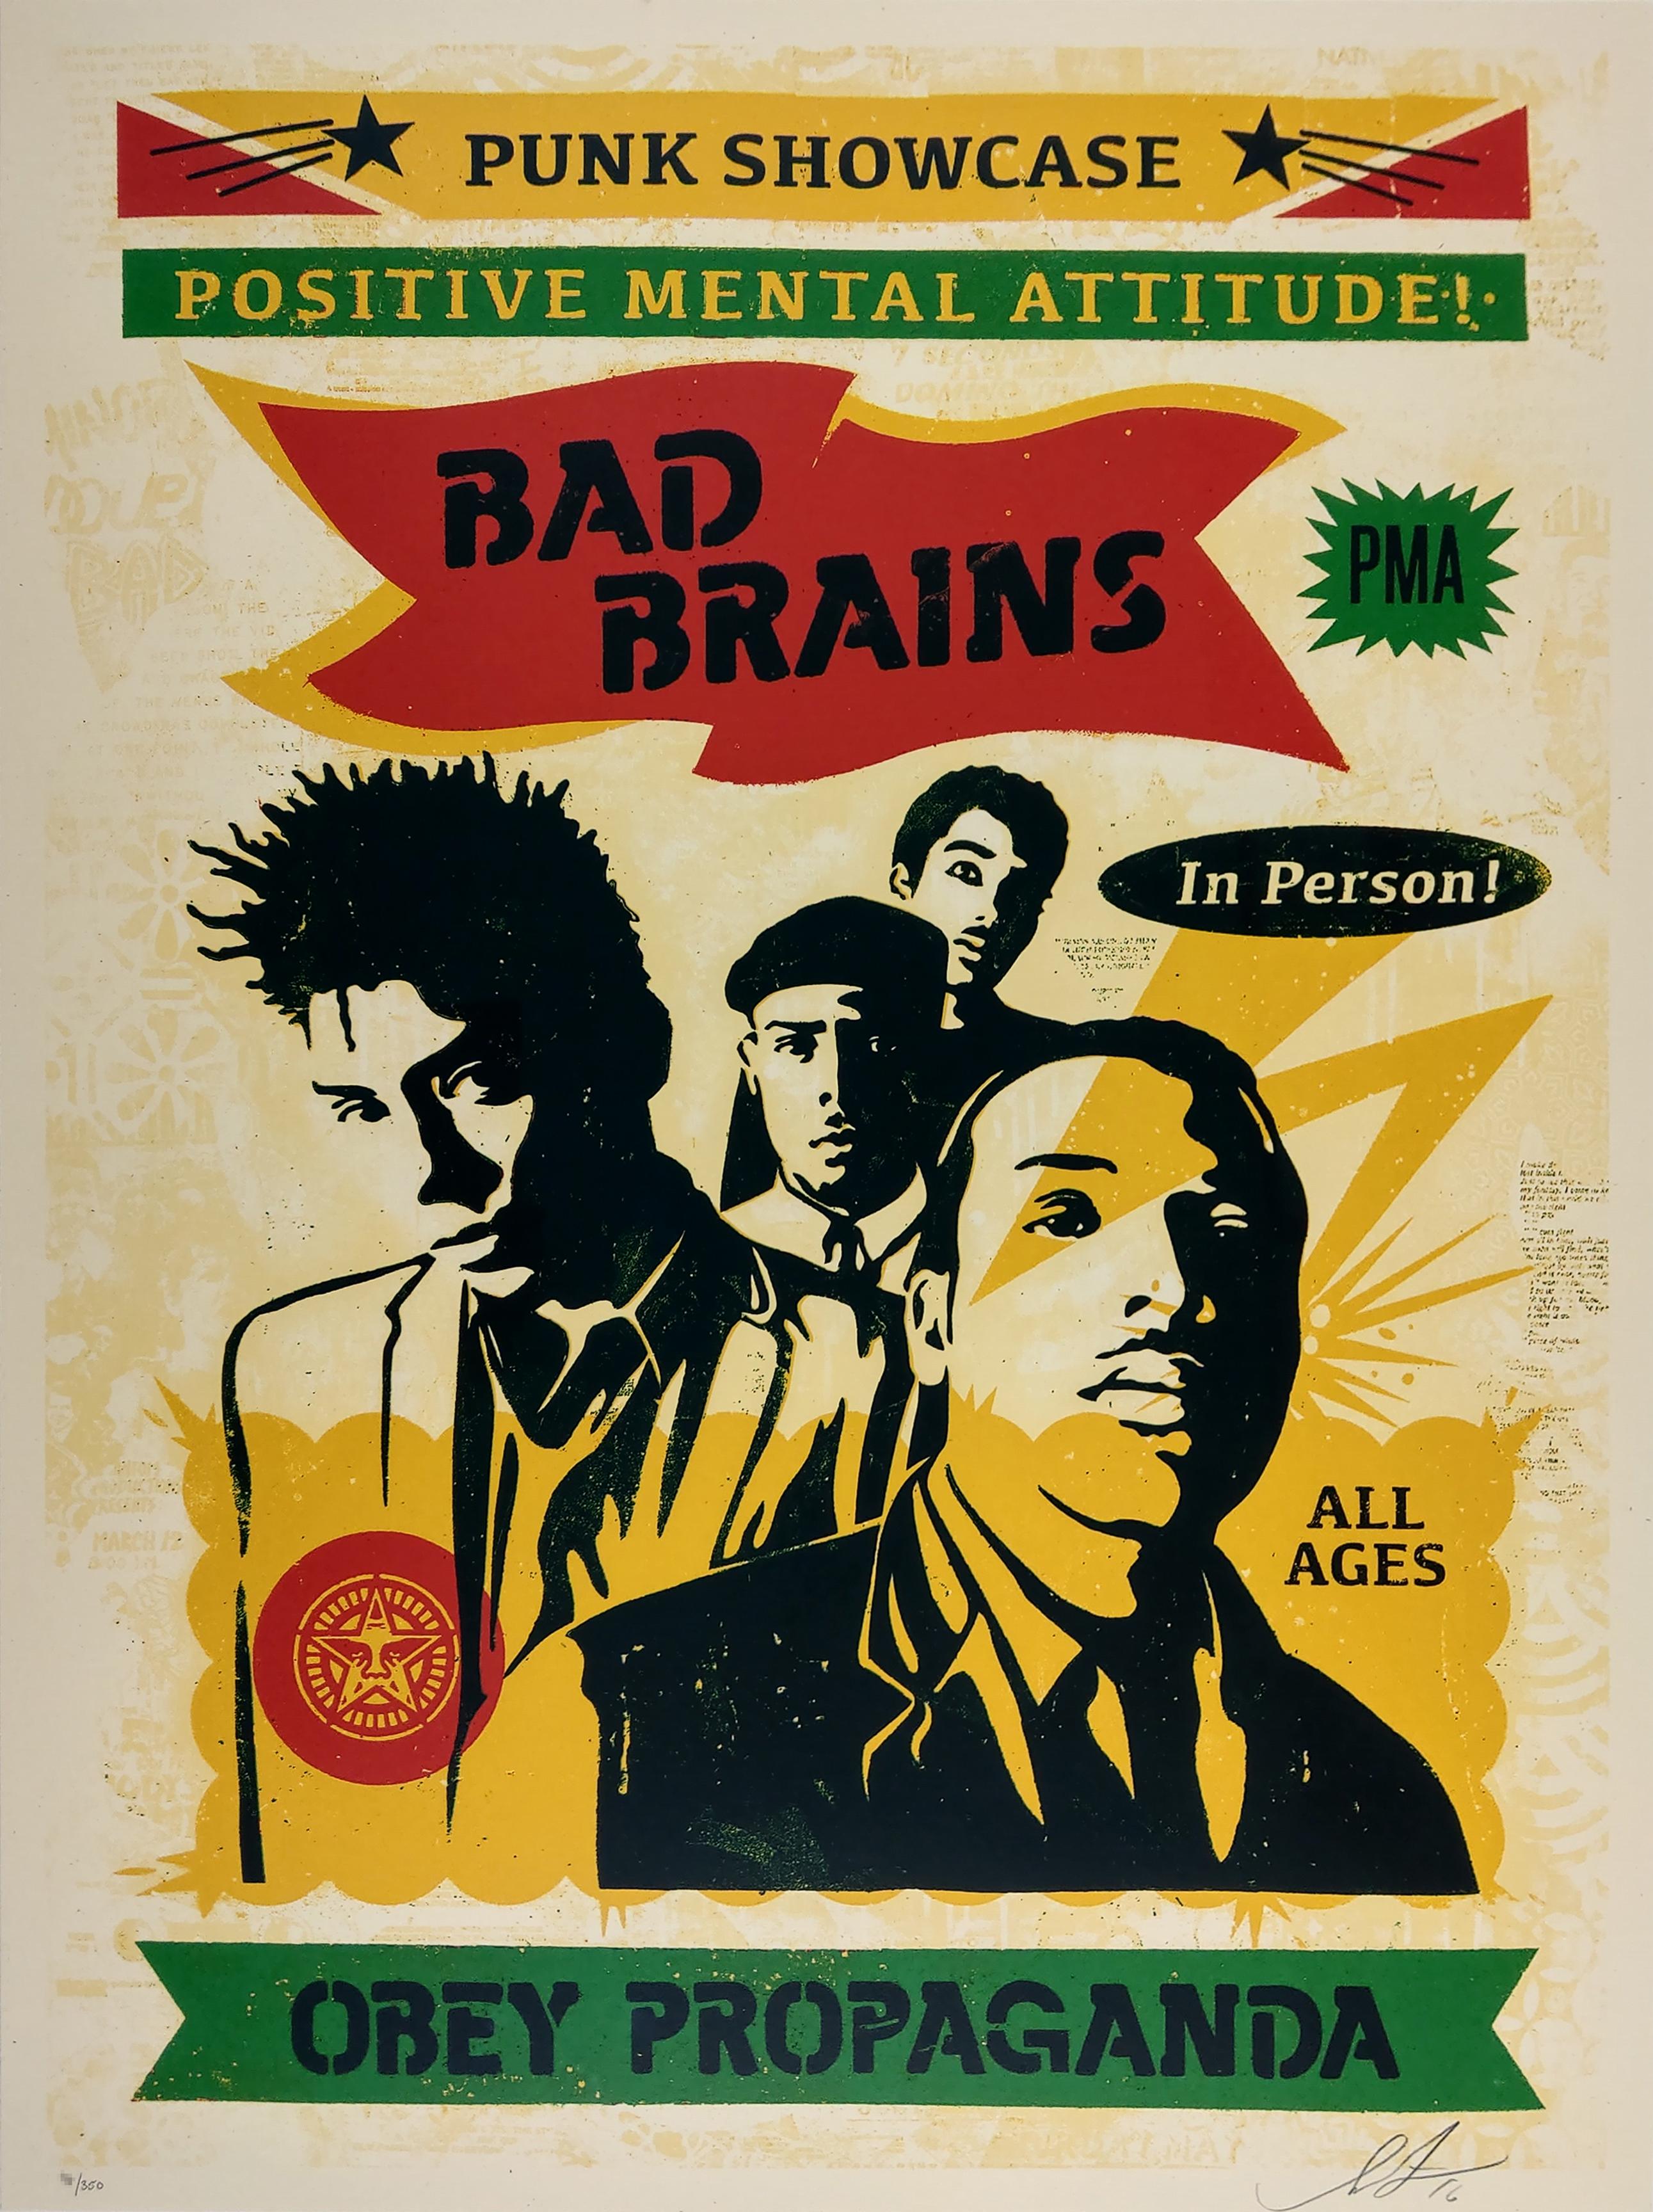 Bad Brains Punk Showcase (Rasta). 18 x 24 Zoll. 5-Farb-Siebdruck auf Creme Speckle Tone Papier. Signiert von Shepard Fairey. Auflage von 350 Stück.
 
Shepard Fairey gehört neben Banksy, Mr. Brainwash und anderen zu den wichtigsten Vertretern der